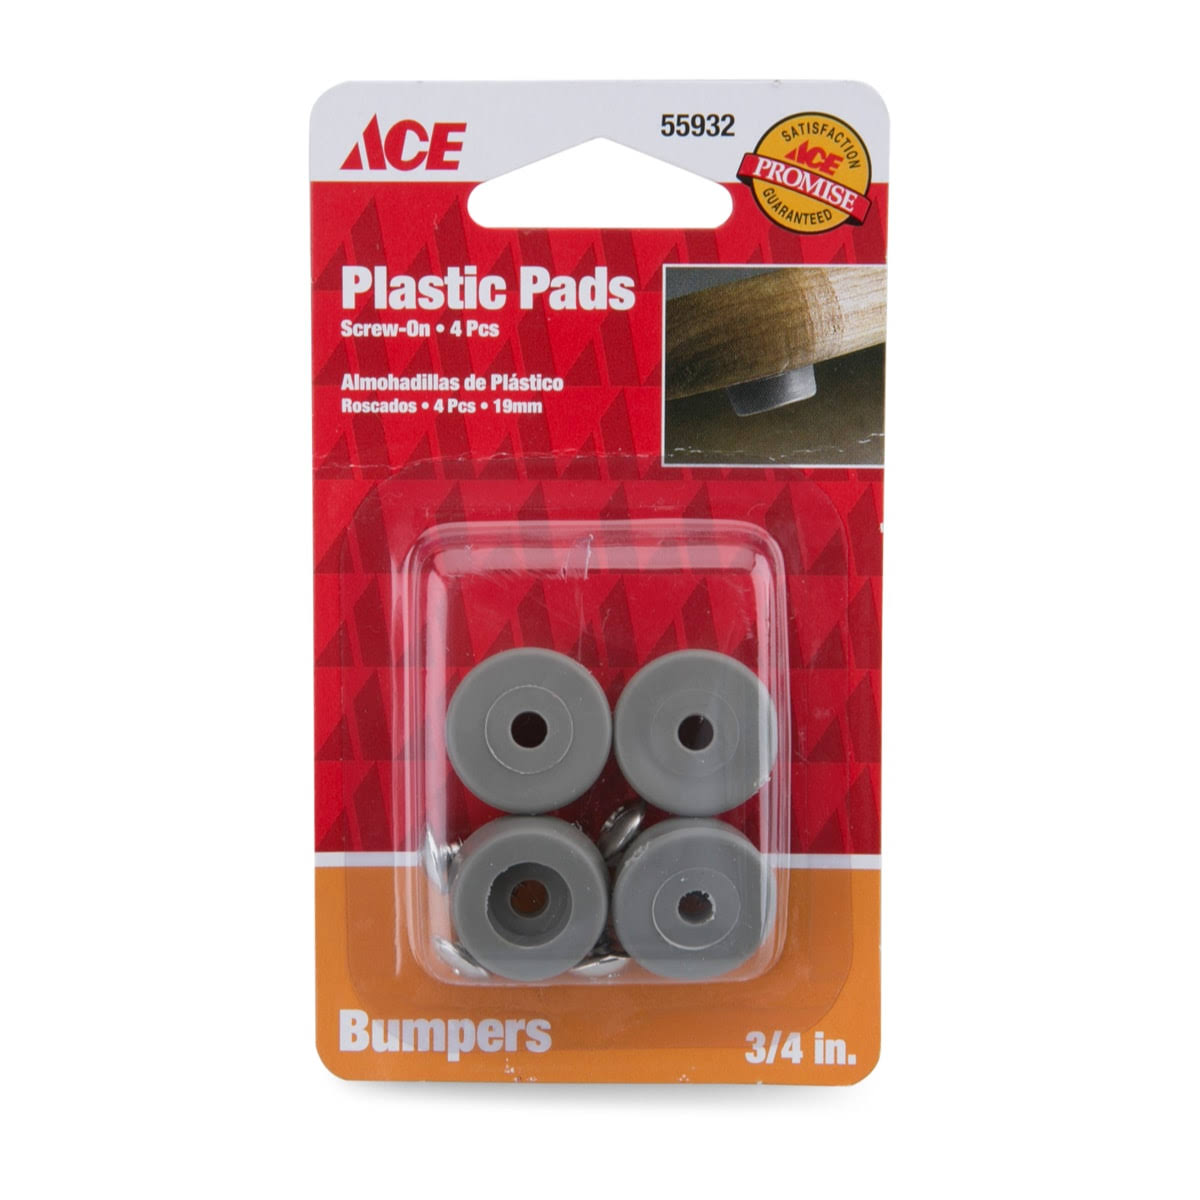 Ace Plastic Pads